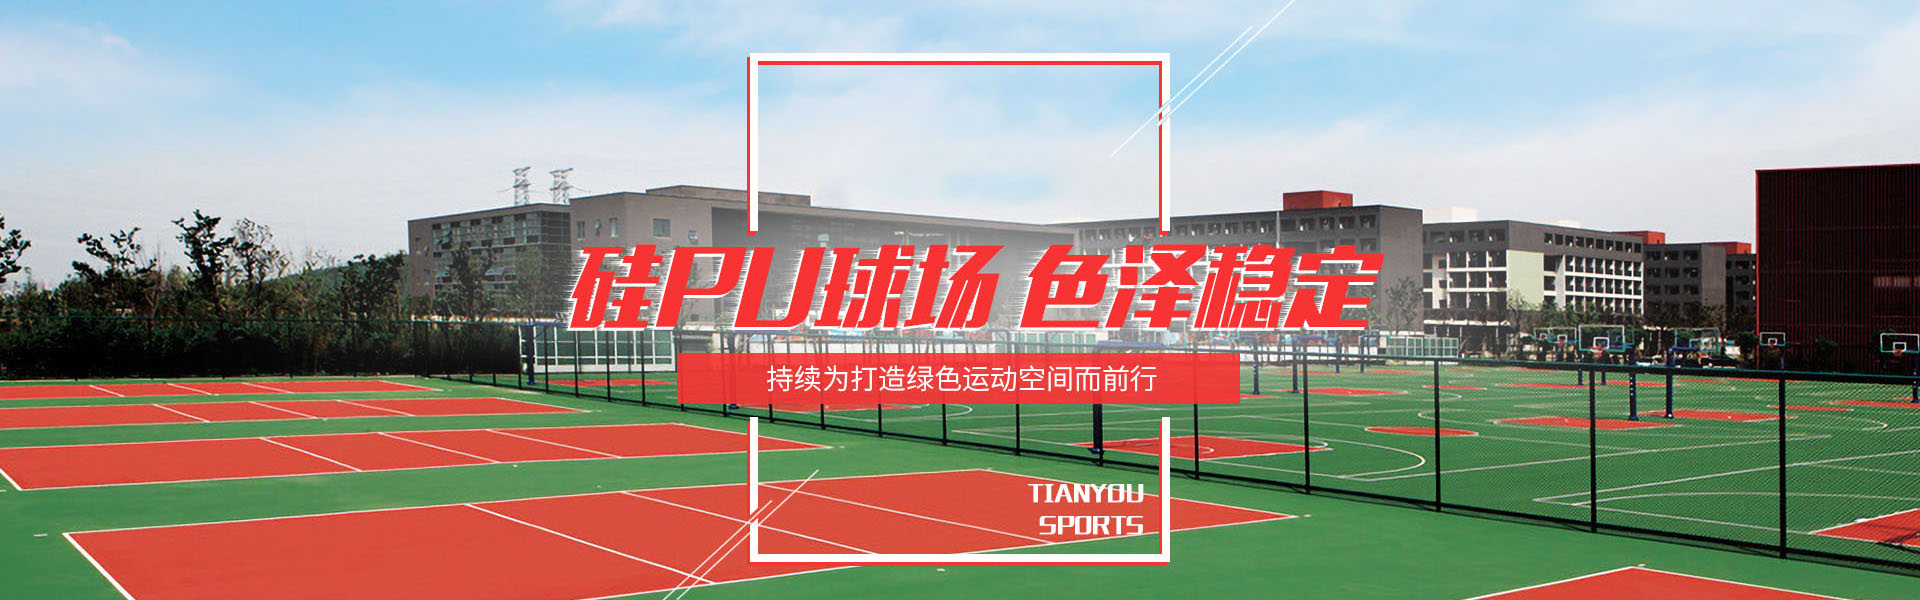 杭州巨能体育设施工程有限公司